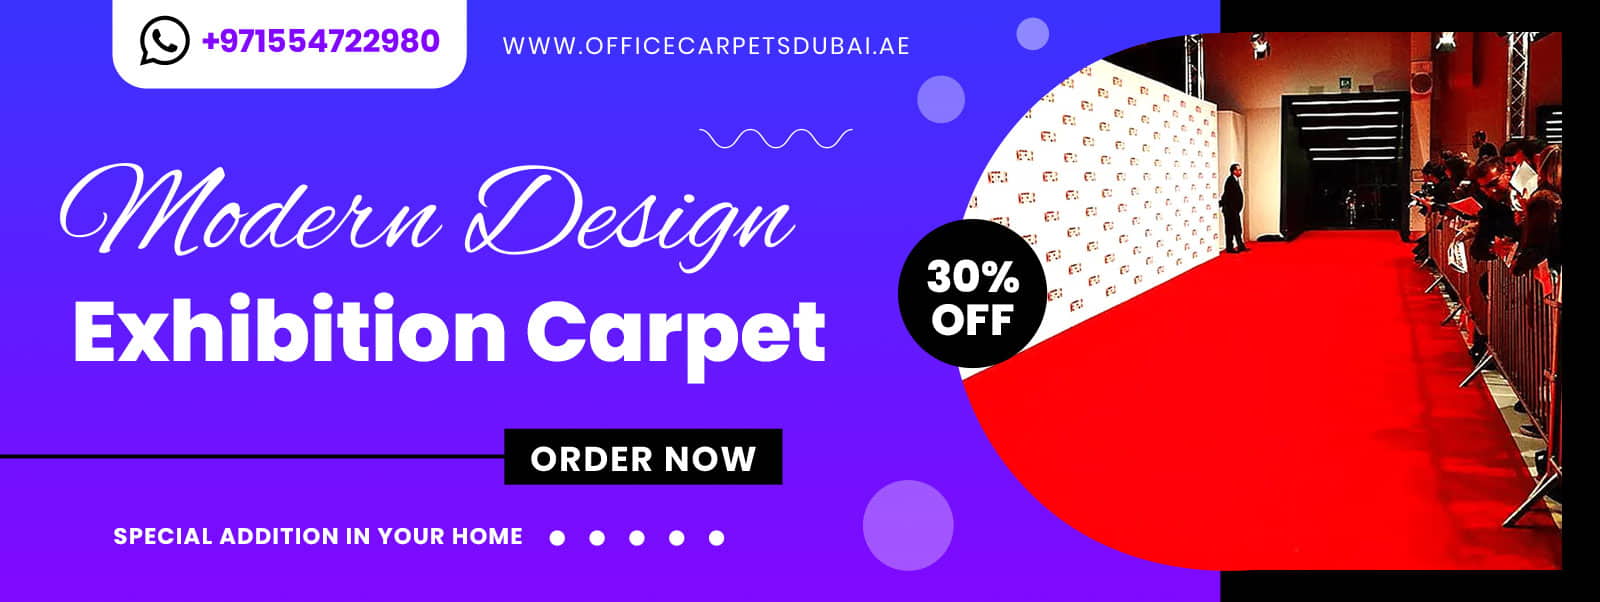 Best-Quality-Exhibition-carpet